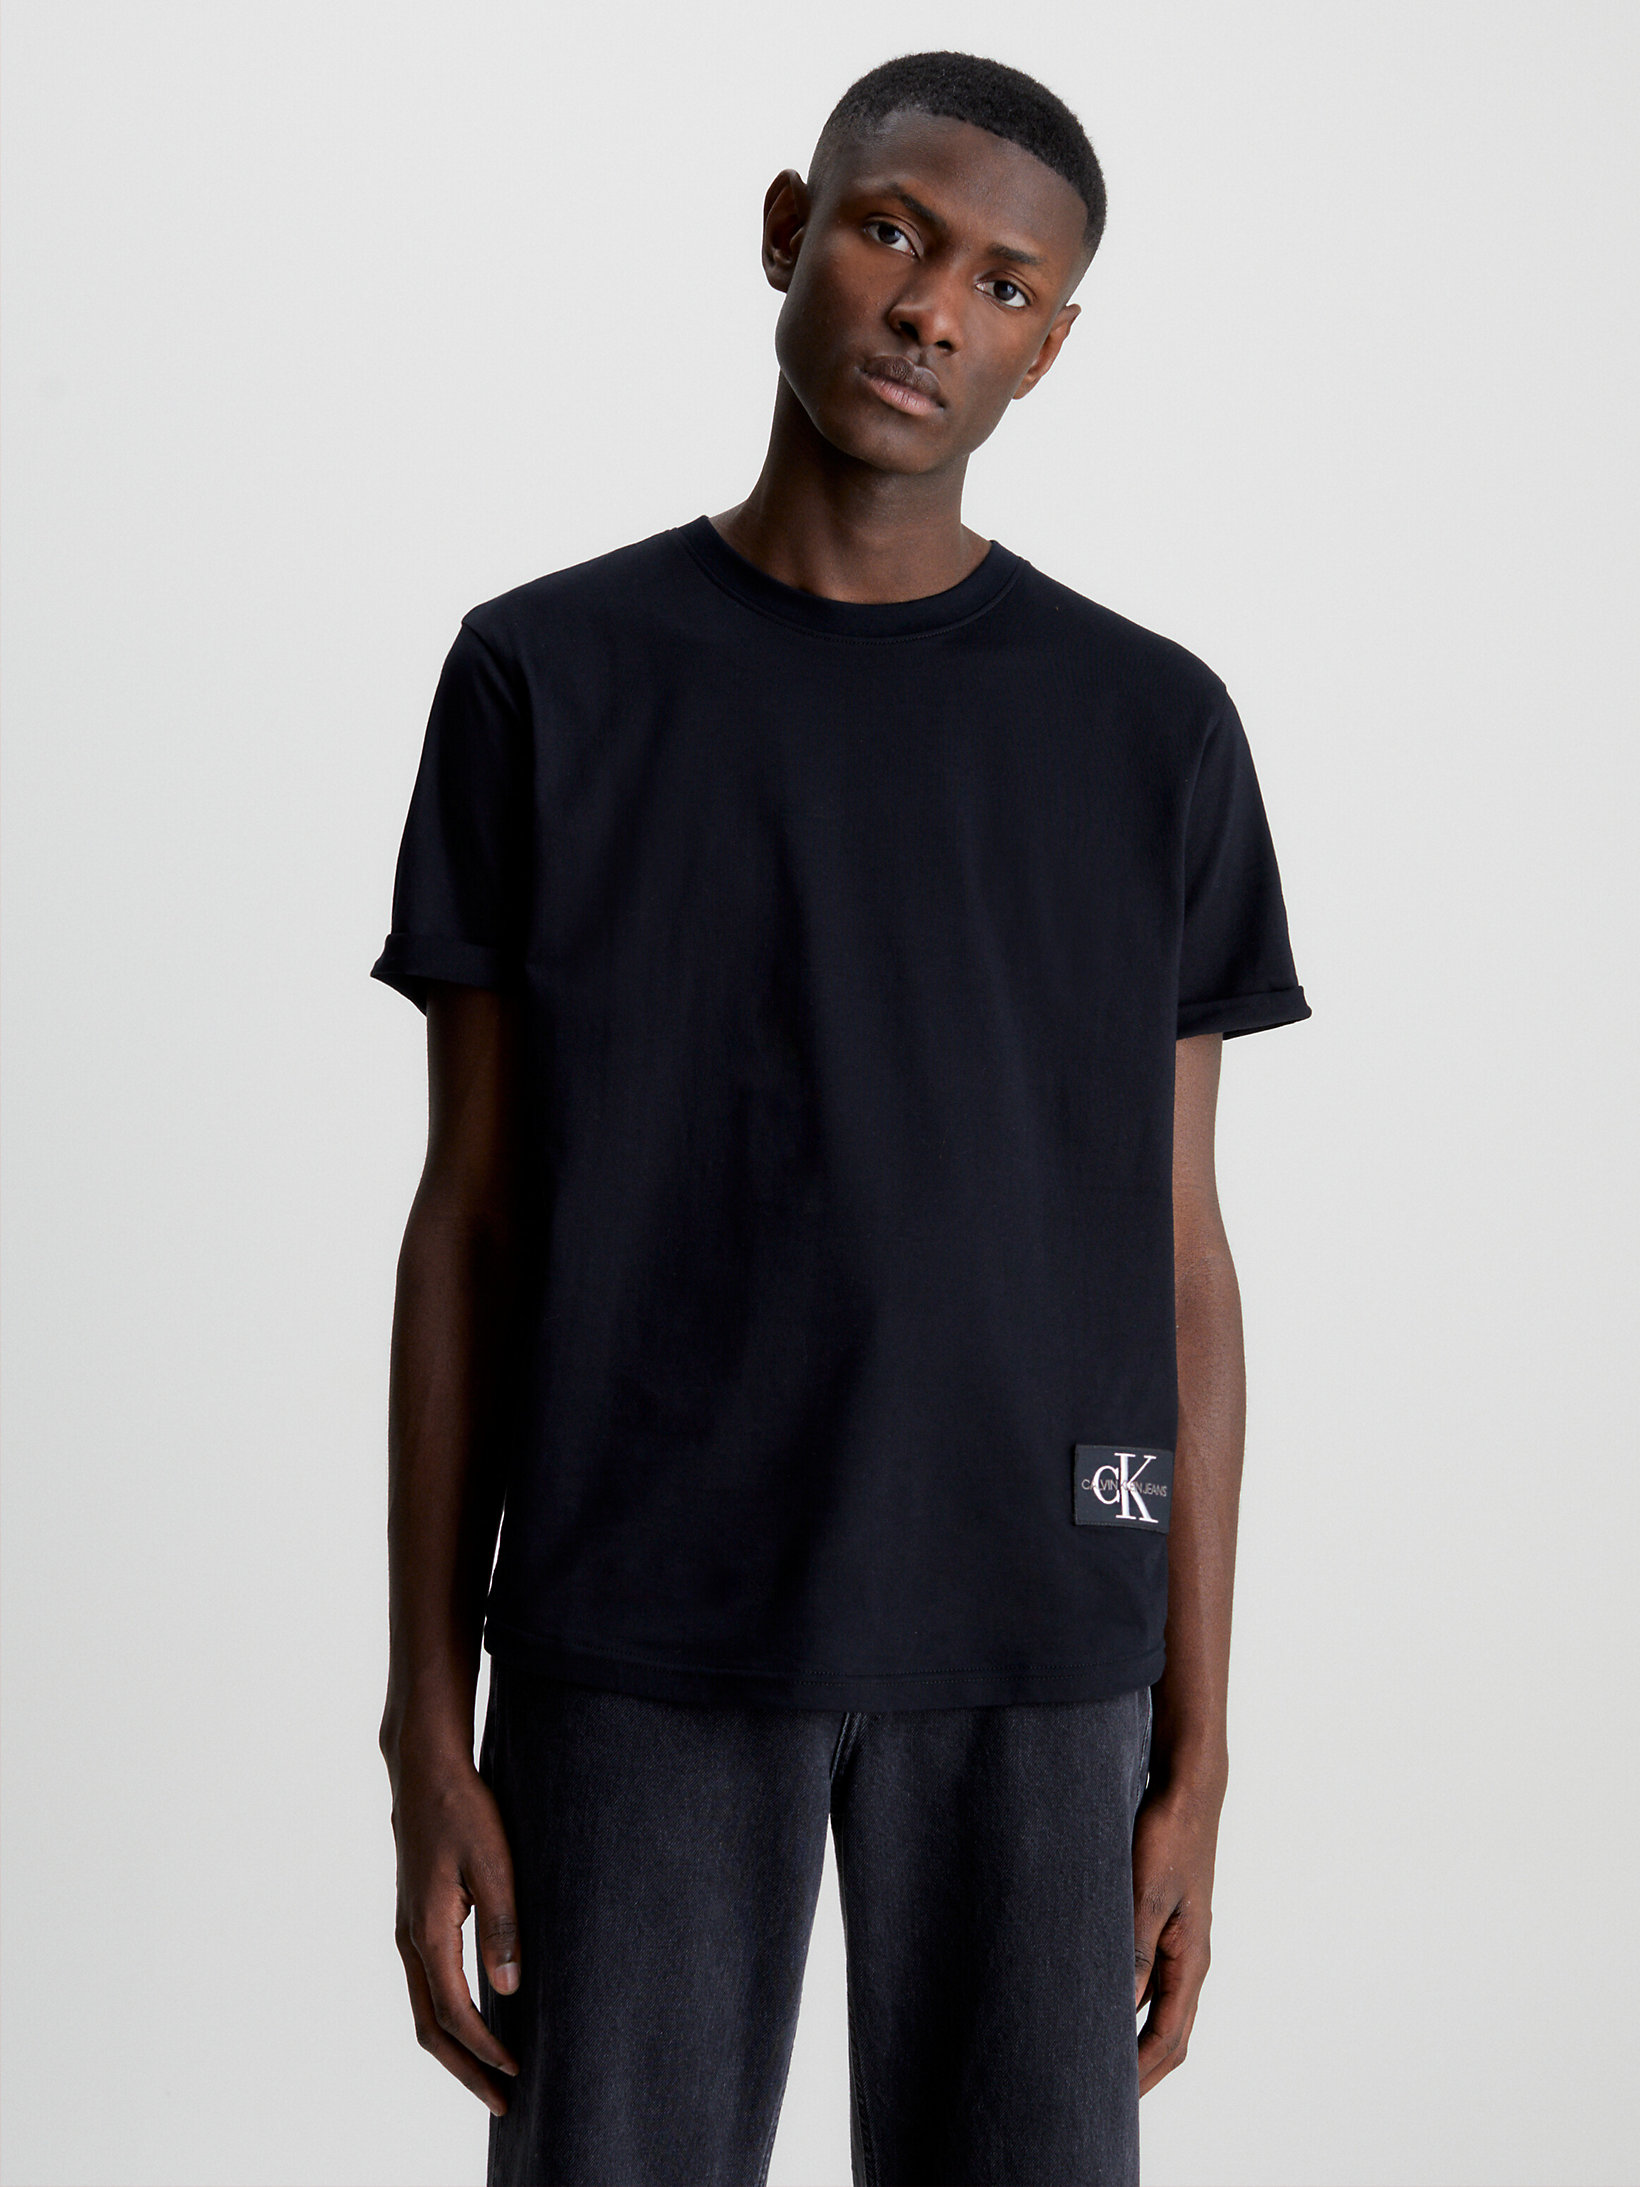 T-Shirt Con Stemma In Cotone Biologico > CK Black > undefined uomo > Calvin Klein